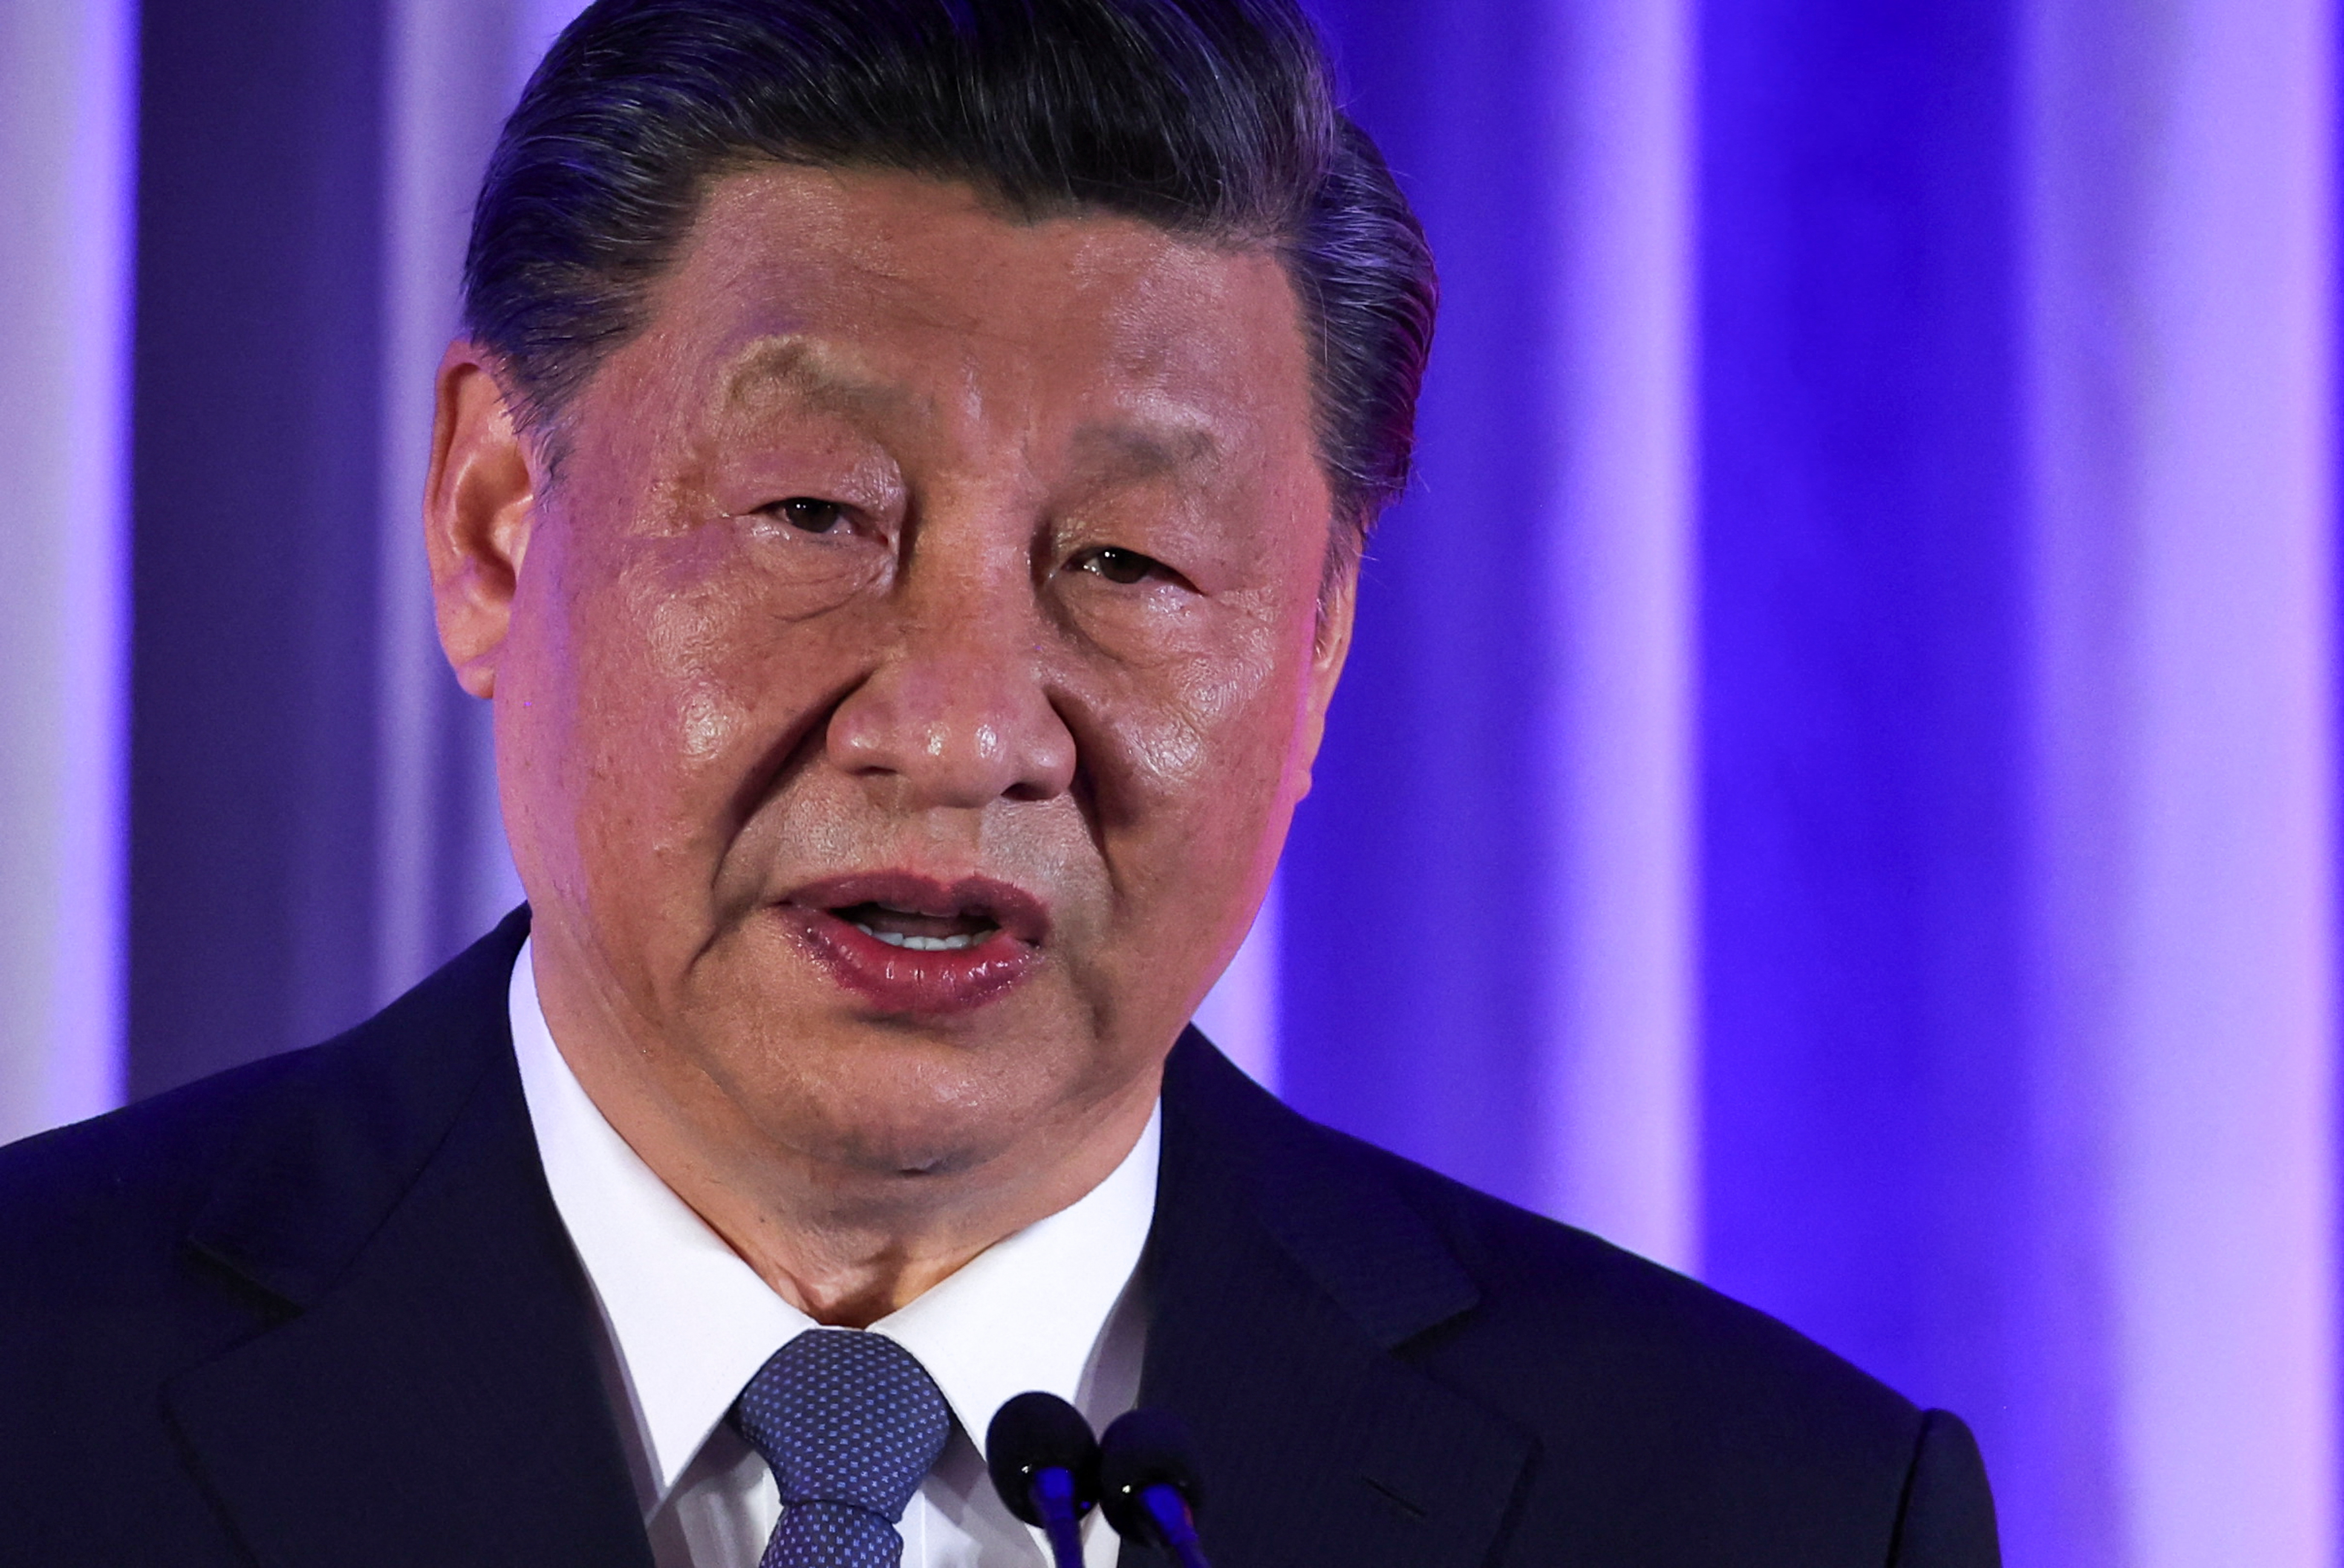 中国習主席、「外交上の鉄の軍隊」の編成要請 強硬的な姿勢示唆 - ロイター (Reuters Japan)